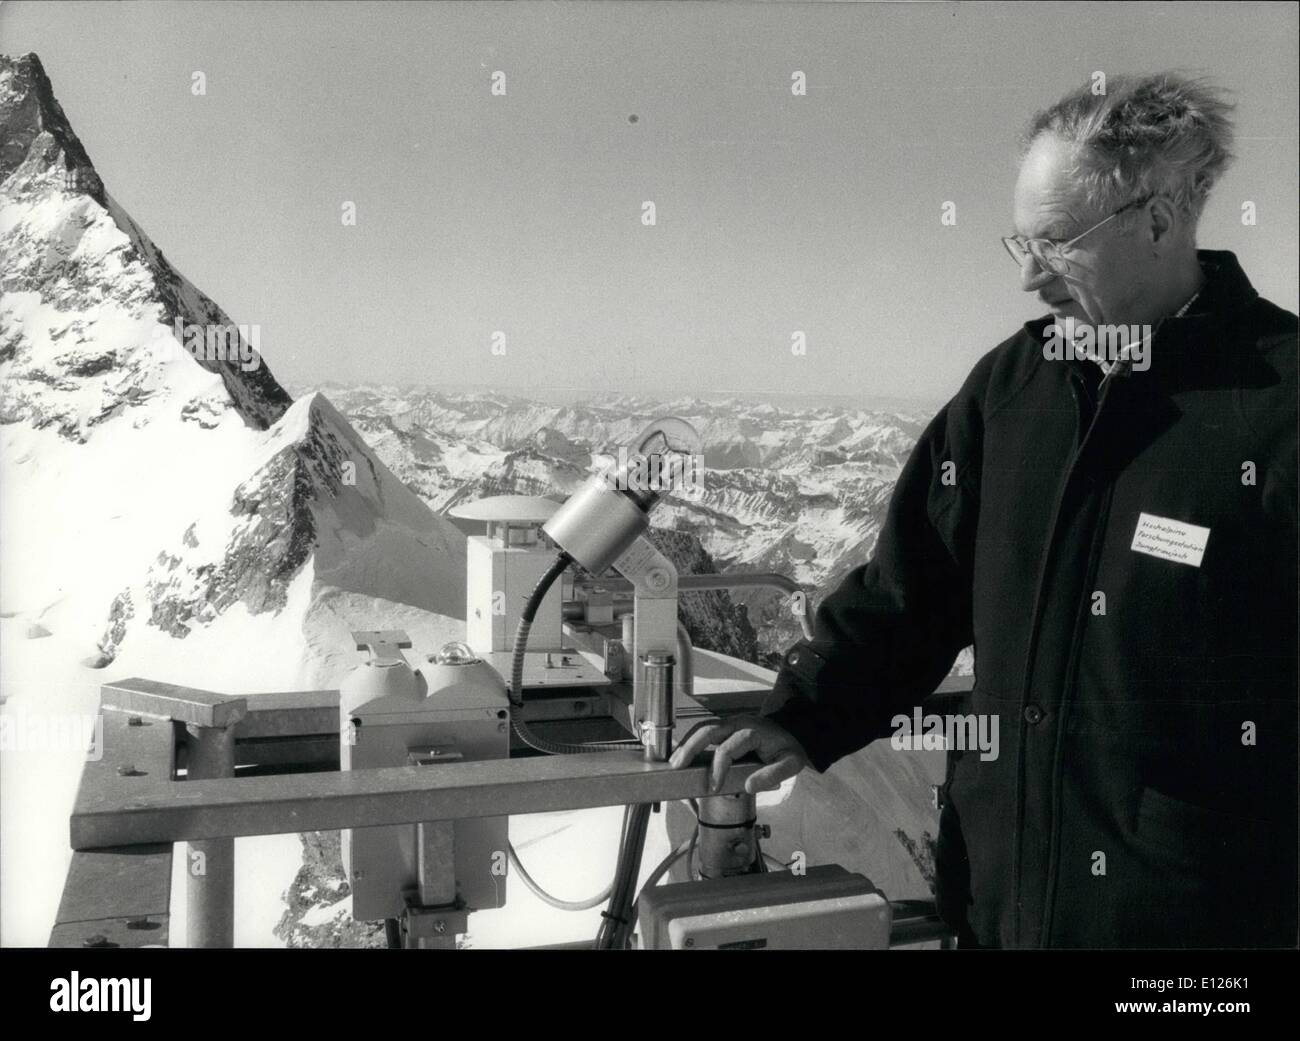 Mai 05, 1990 - SOUS OBSERVATION MÉTÉO Météorologue Fritz Mrtschi vérifie les instruments de la station informatique météorologique très haut sur le sommet de la Jungfrau. La station est l'un des soixante points d'observation situé à toute la Suisse qui s'enregistrer les données climatiques nécessaires pour les prévisions météorologiques et la recherche à long terme des changements climatiques. Au cours des six dernières années, une augmentation notable de la température a été enregistrée sur la Jungfrau et ailleurs. Banque D'Images